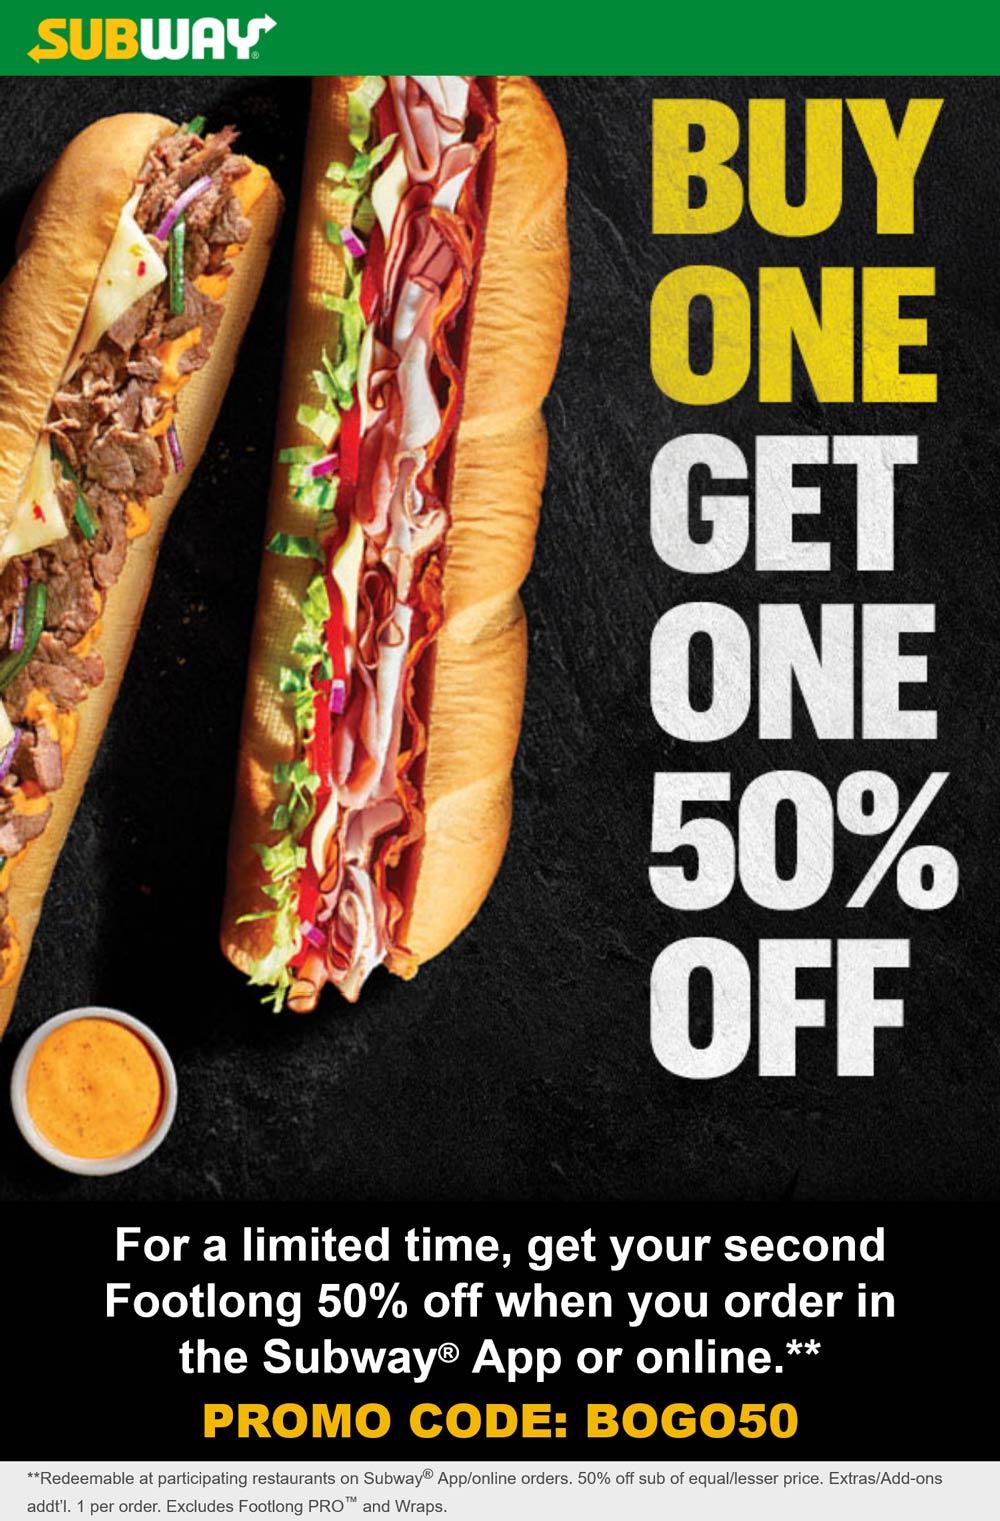 Subway restaurants Coupon  Second footlong sandwich 50% off at Subway via promo code BOGO50 #subway 